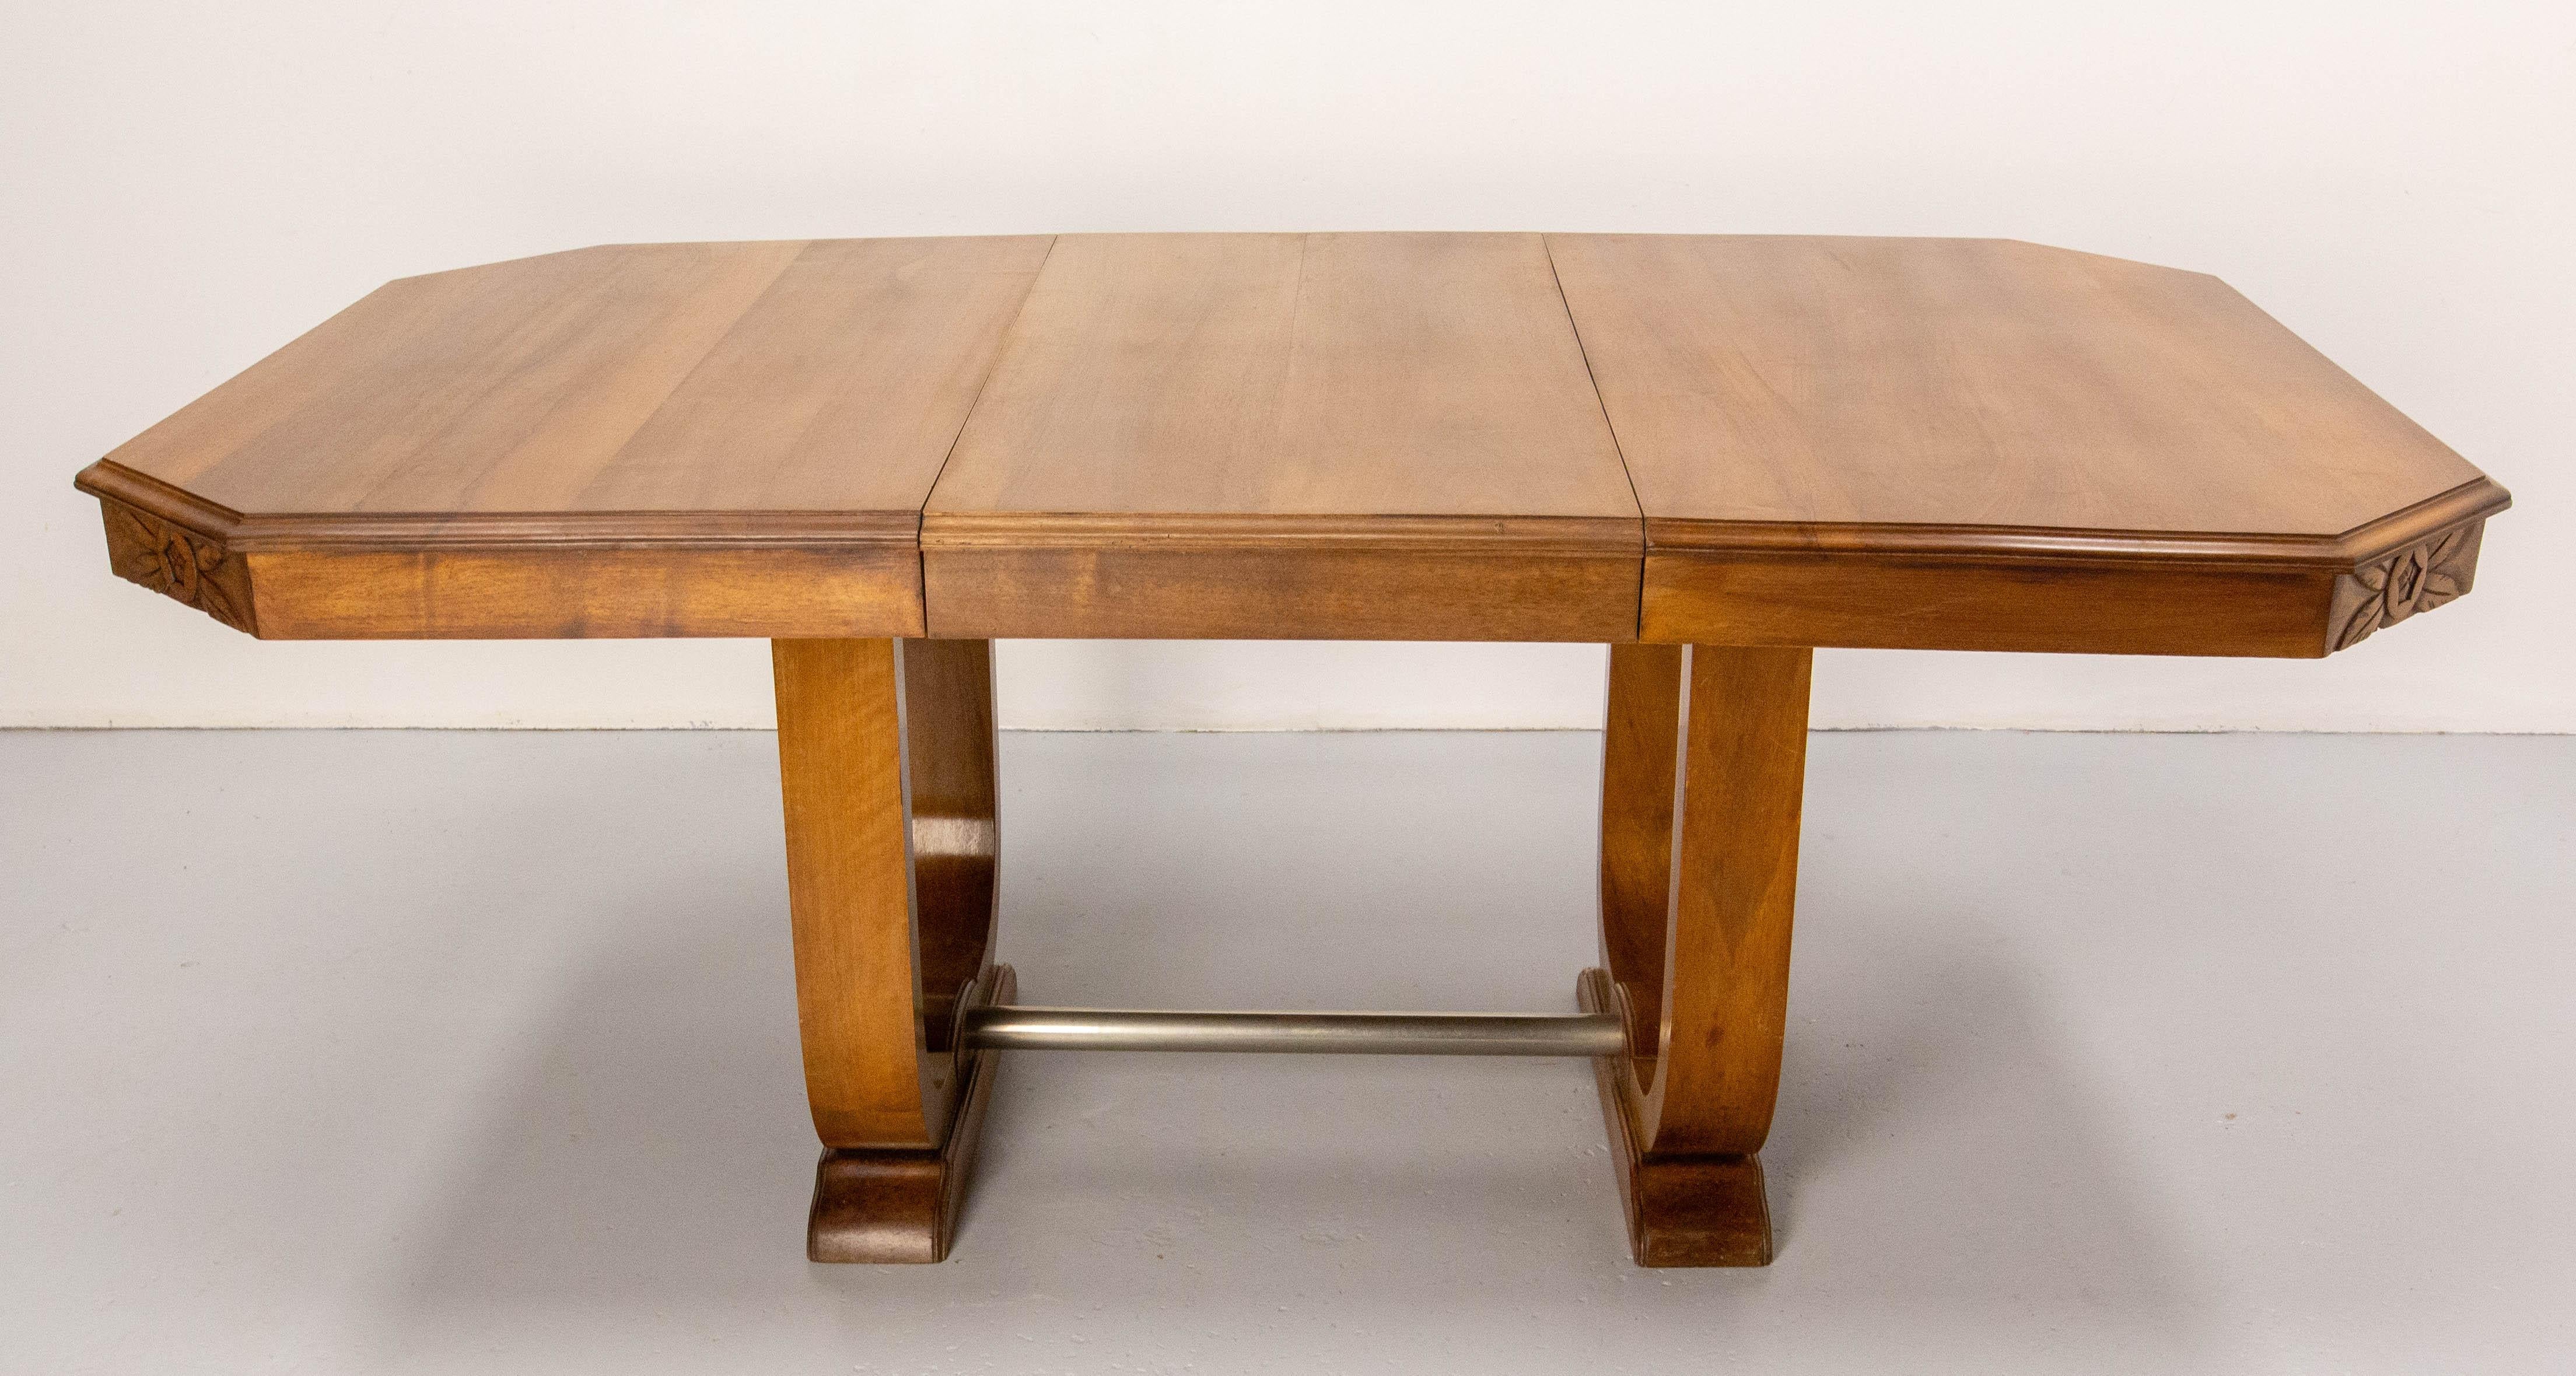 Esstisch Art Deco, hergestellt um 1930.
Die Verlängerung wurde kürzlich von unserem Tischler aus dem Nussbaumholz eines anderen Tisches gefertigt. 
Die Endbearbeitung der Platte und der Gurt des Tisches wurden neu gemacht.
Breite des Tisches, wenn